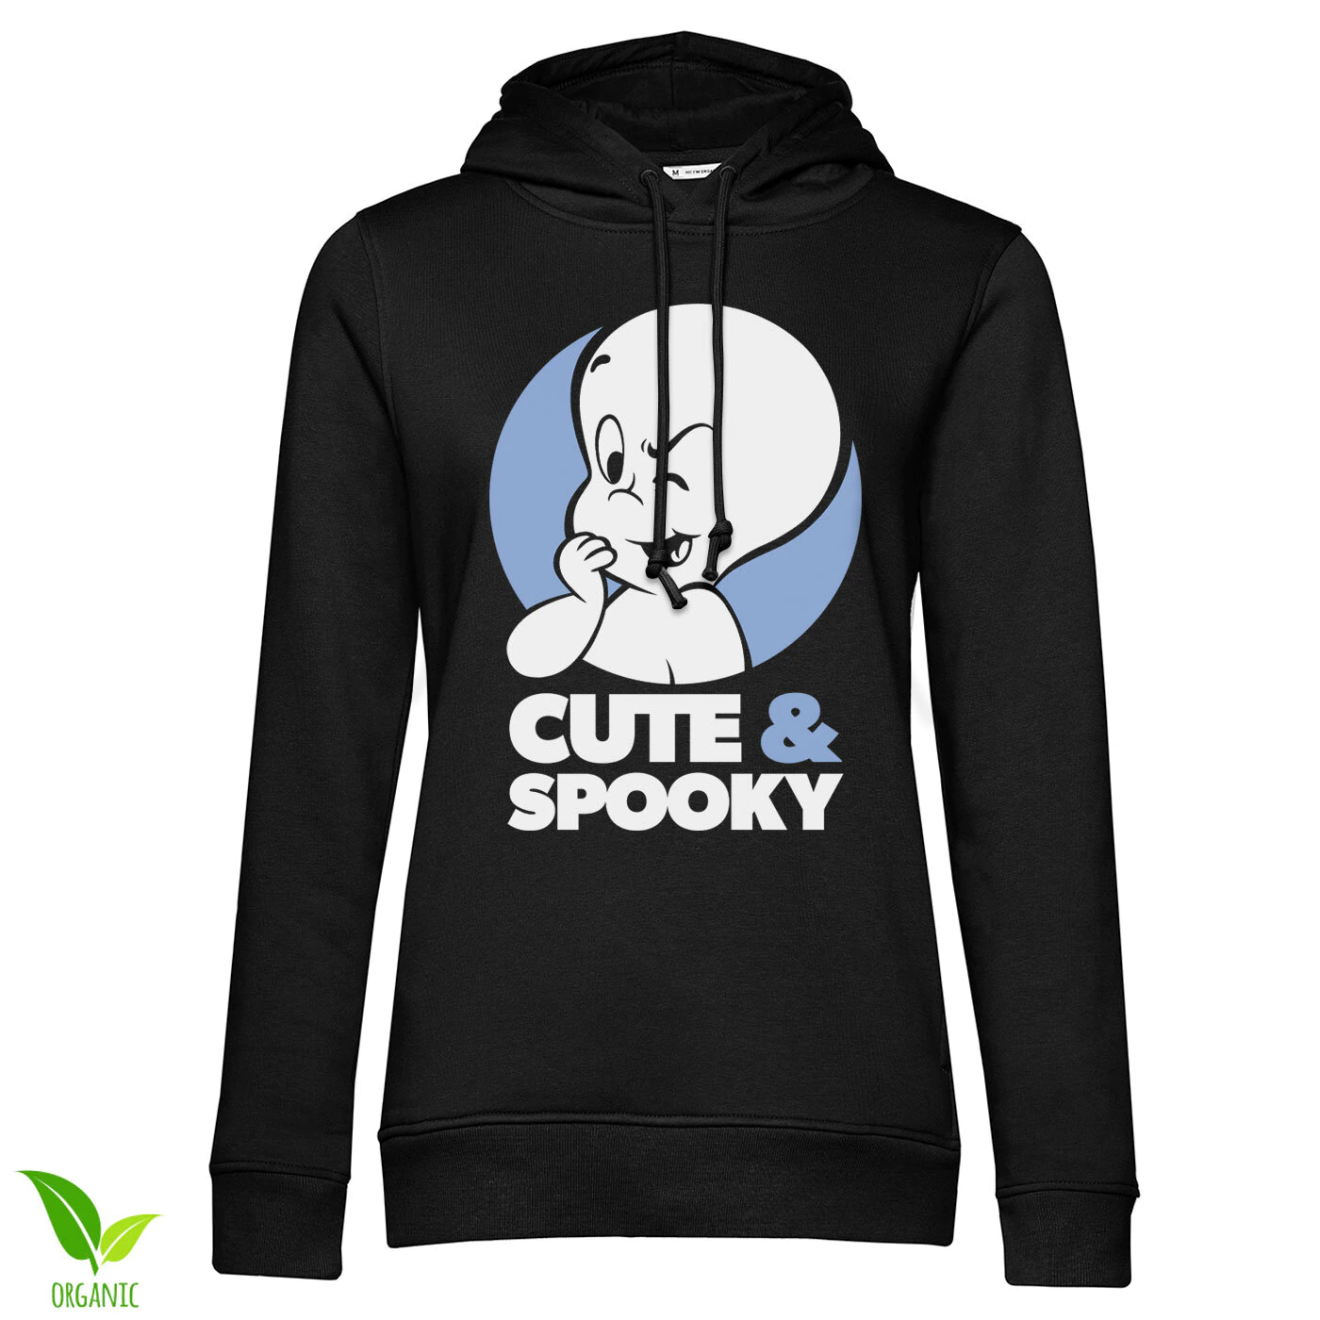 Casper - Cute & Spooky Girls Hoodie Organic